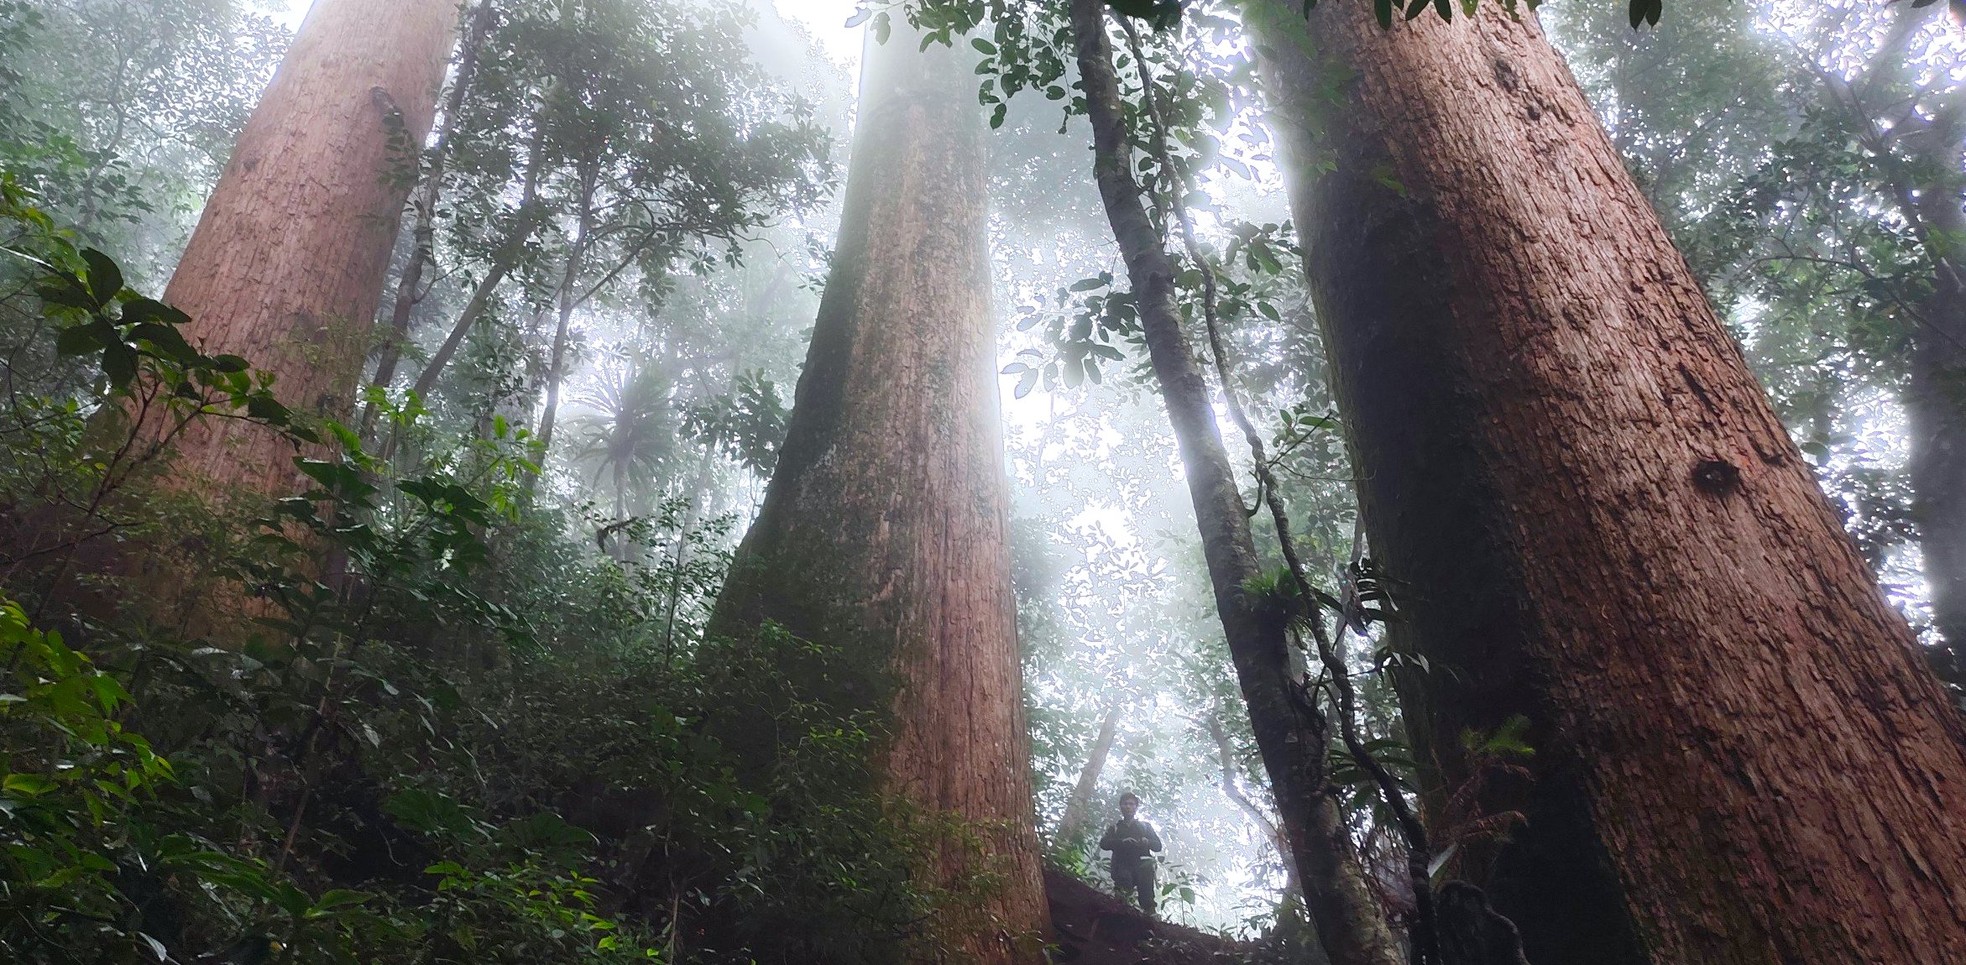 Ngắm cổ thụ Sa mu dầu hơn 2.000 tuổi trong lõi rừng già, được công nhận là cây di sản Việt Nam - Ảnh 8.